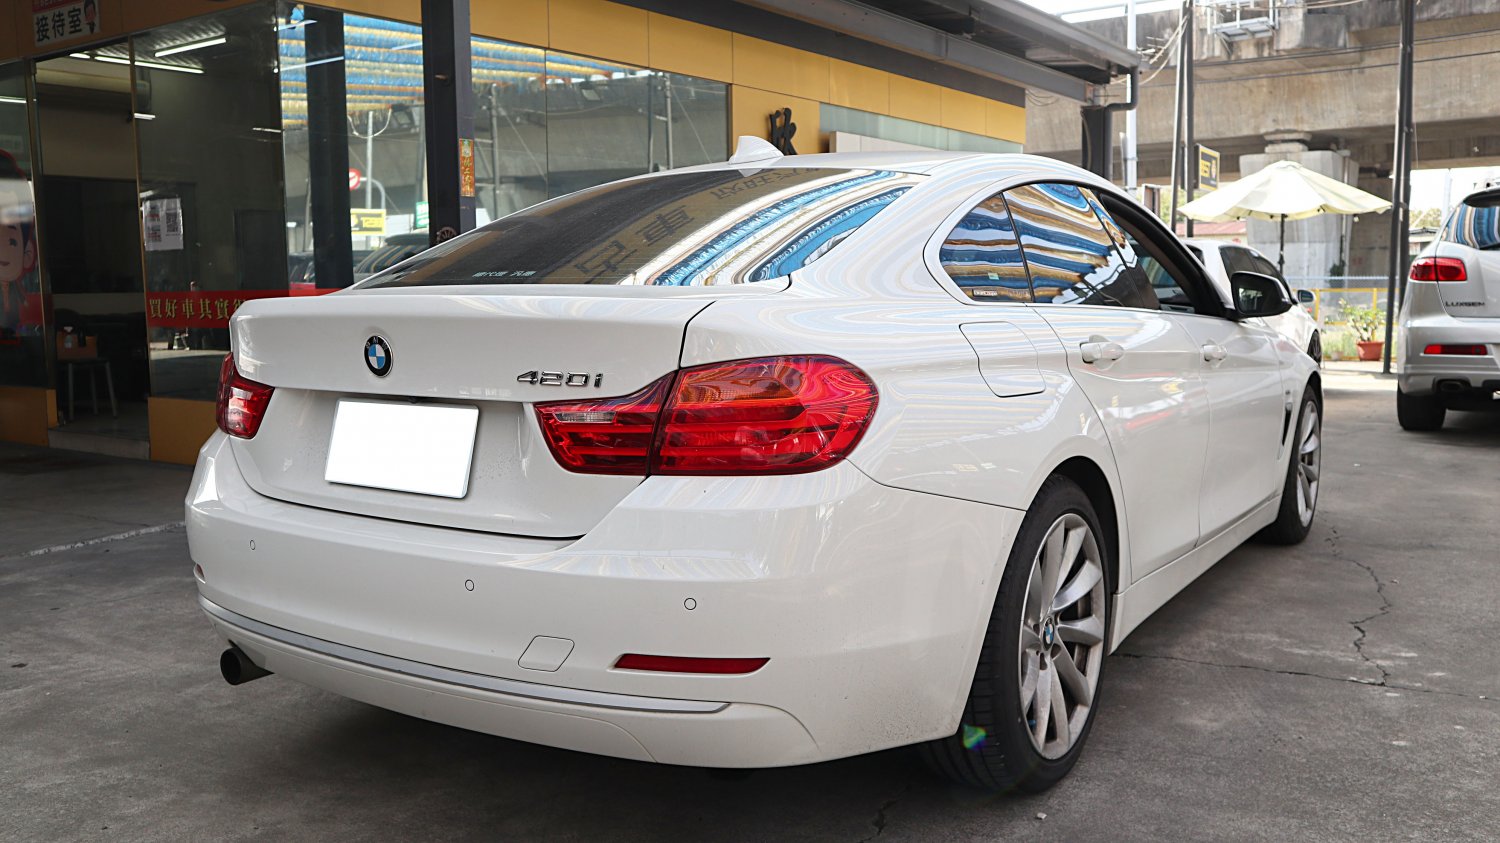 Bmw 寶馬 ／ 4-Series ／ 2015年 ／ 2015年 BMW 420i gran coupe 白色 寶馬中古車 ／ 九州欣旺汽車 (台南)